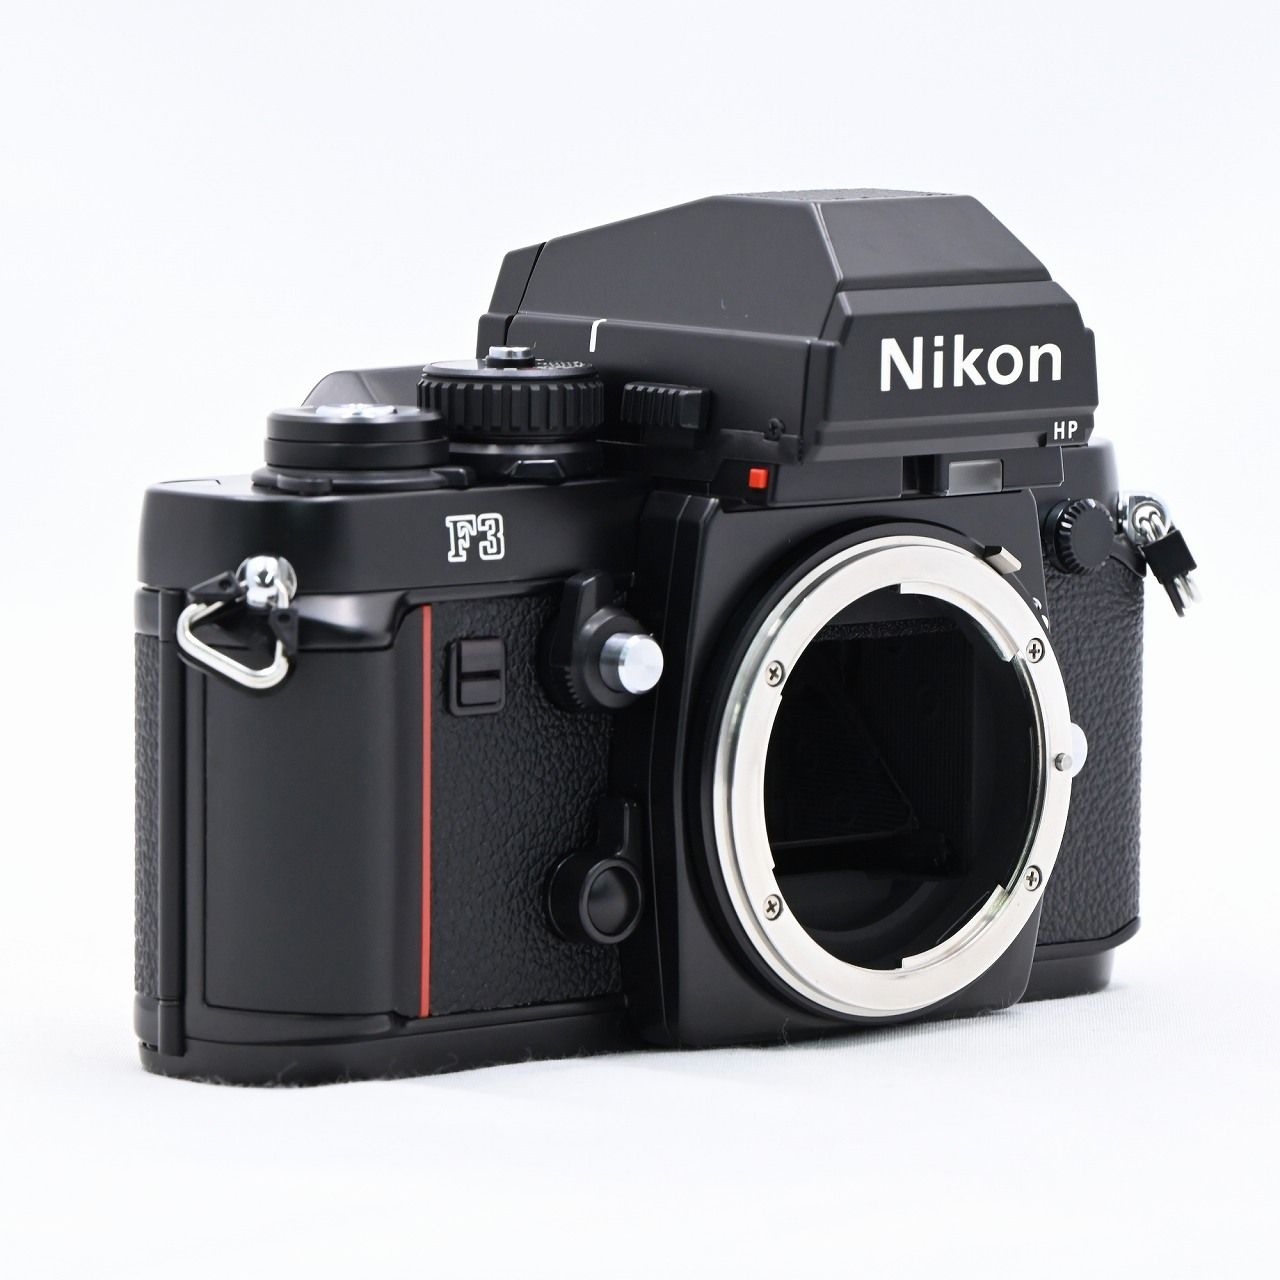 ニコン 未使用に近い ニコン Nikon F3 HP 後期型 一眼レフ MF フィルムカメラ ボディ #6134